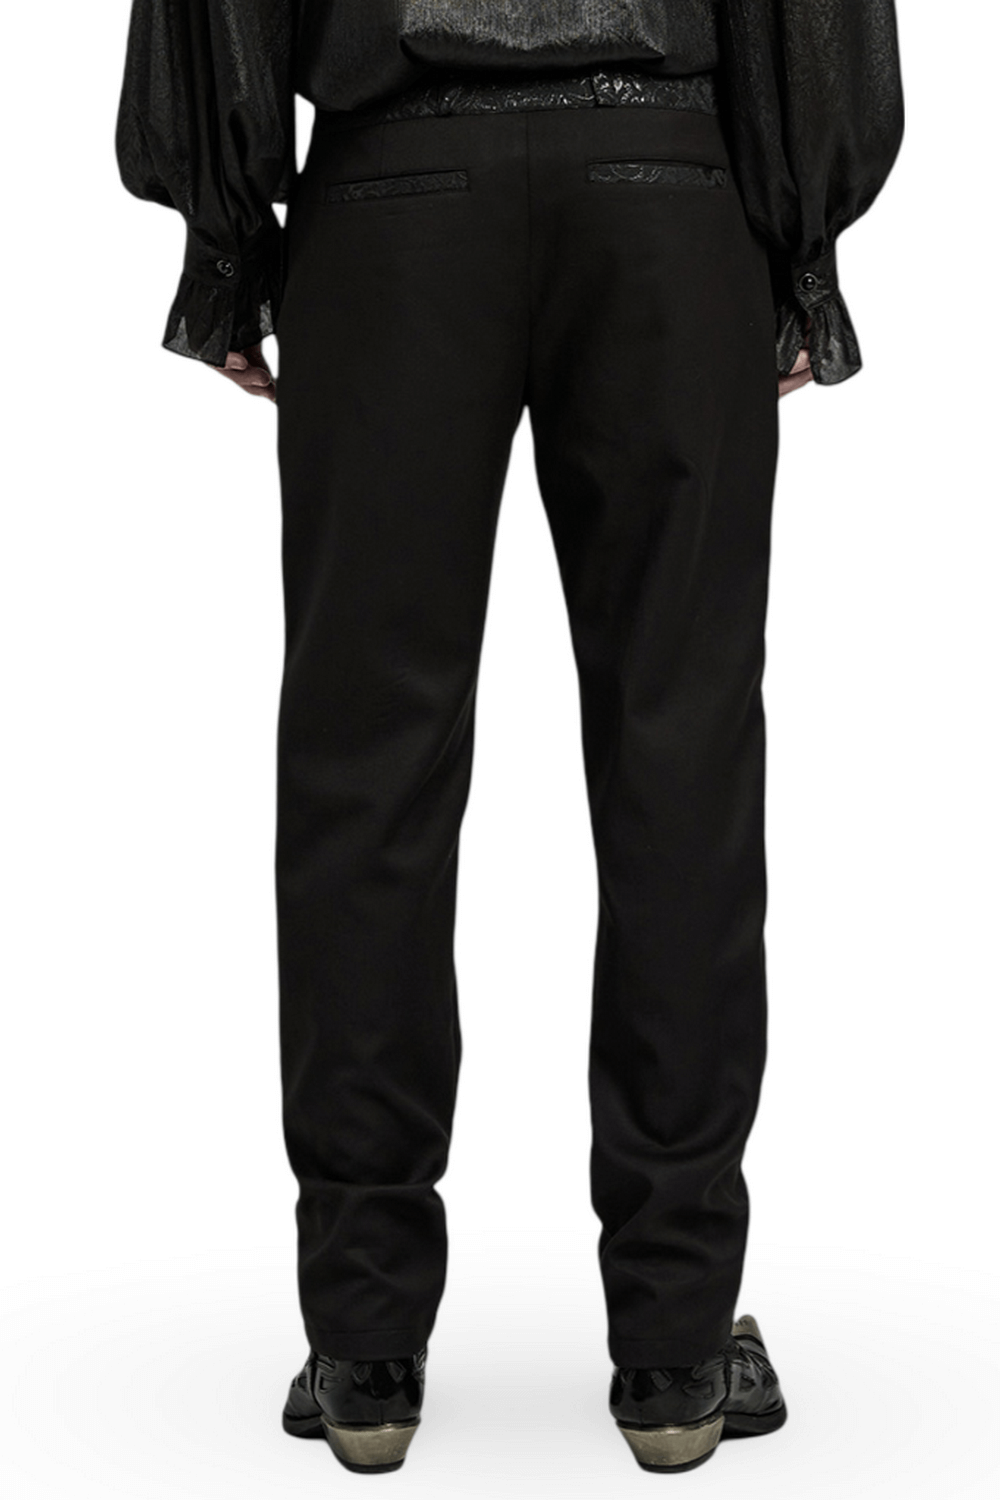 Pantalón gótico negro con cordones y detalle de jacquard para hombre